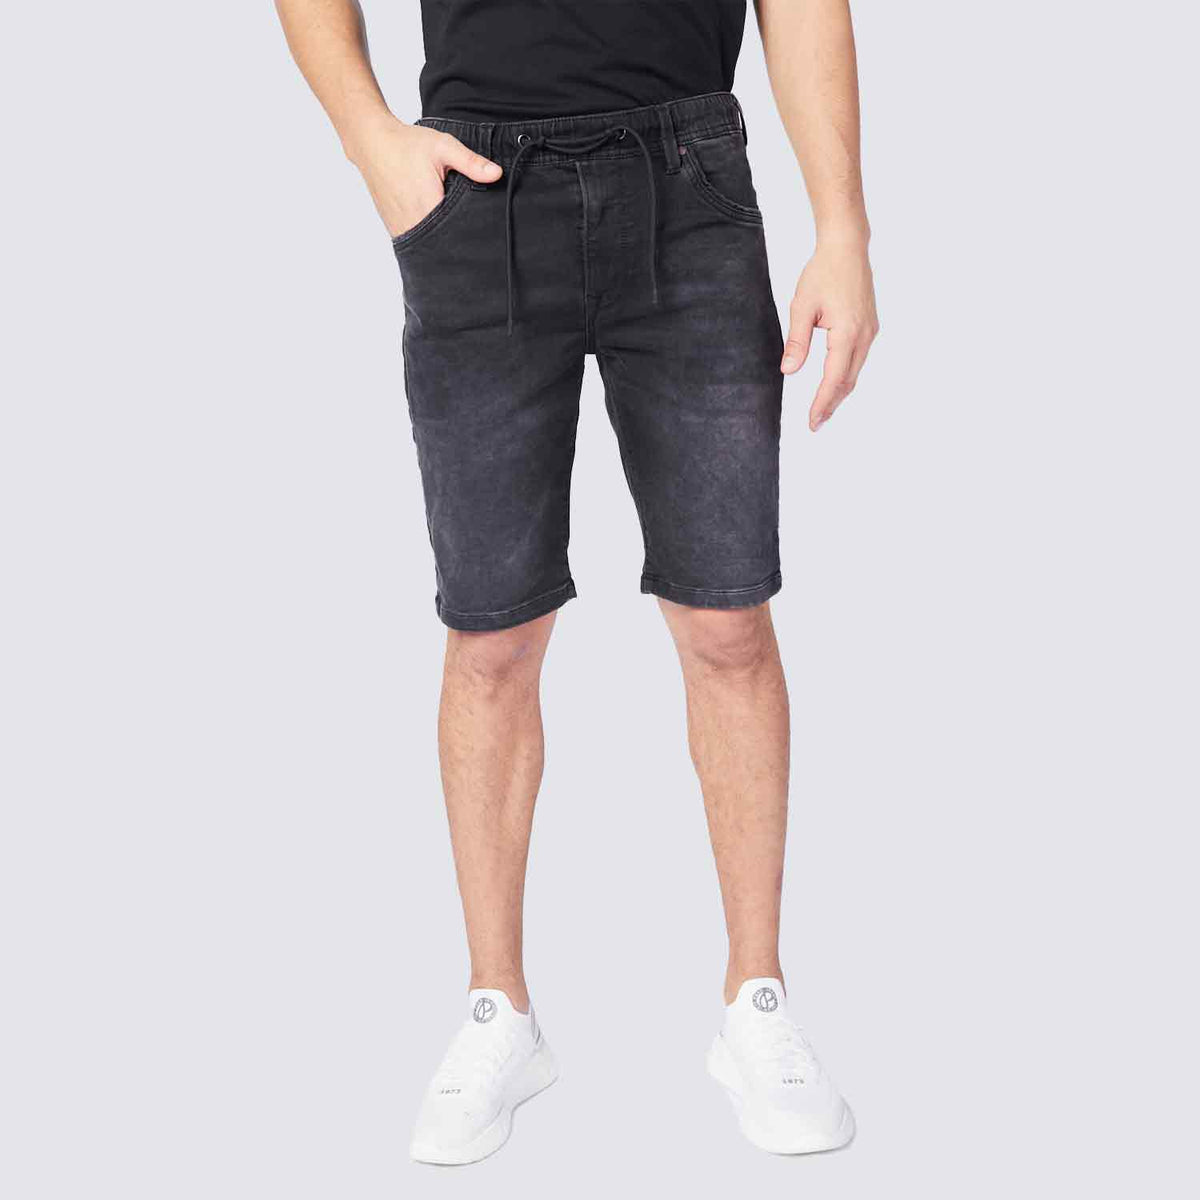 פפה ג'ינס שורט ג'ינס בצבע אפור כהה לגבר-Pepe Jeans London-28-נאקו